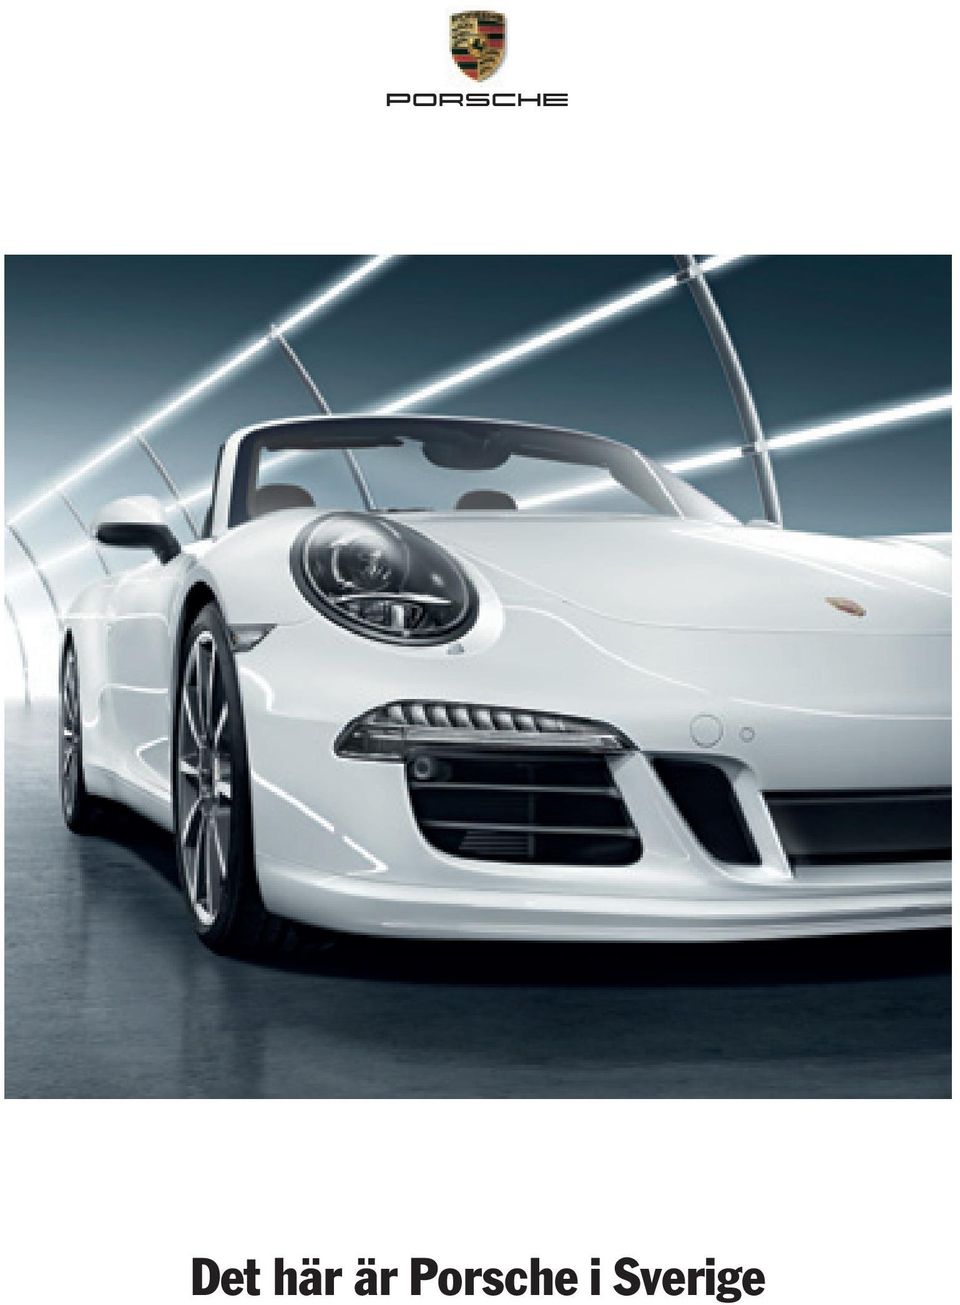 Porsche i